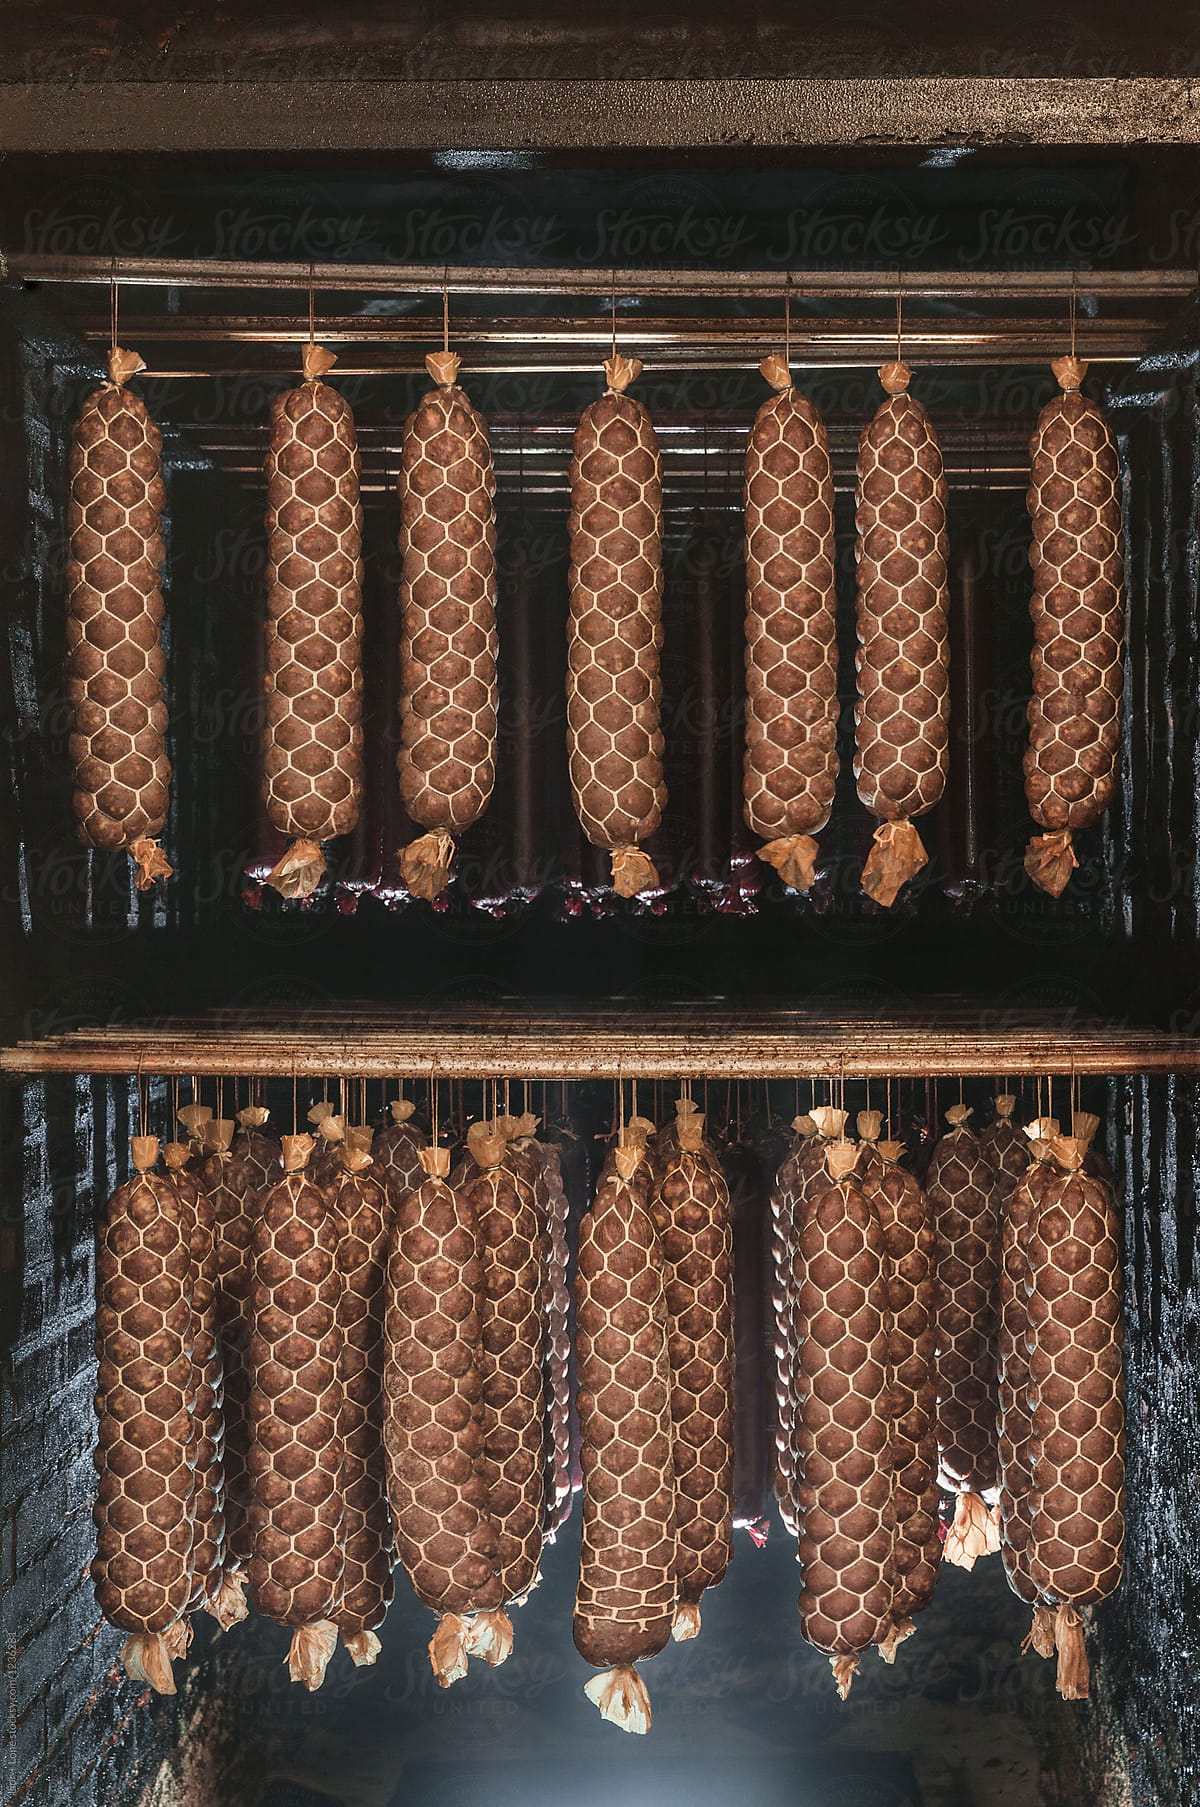 Large aged sausage hanging in smoke chamber